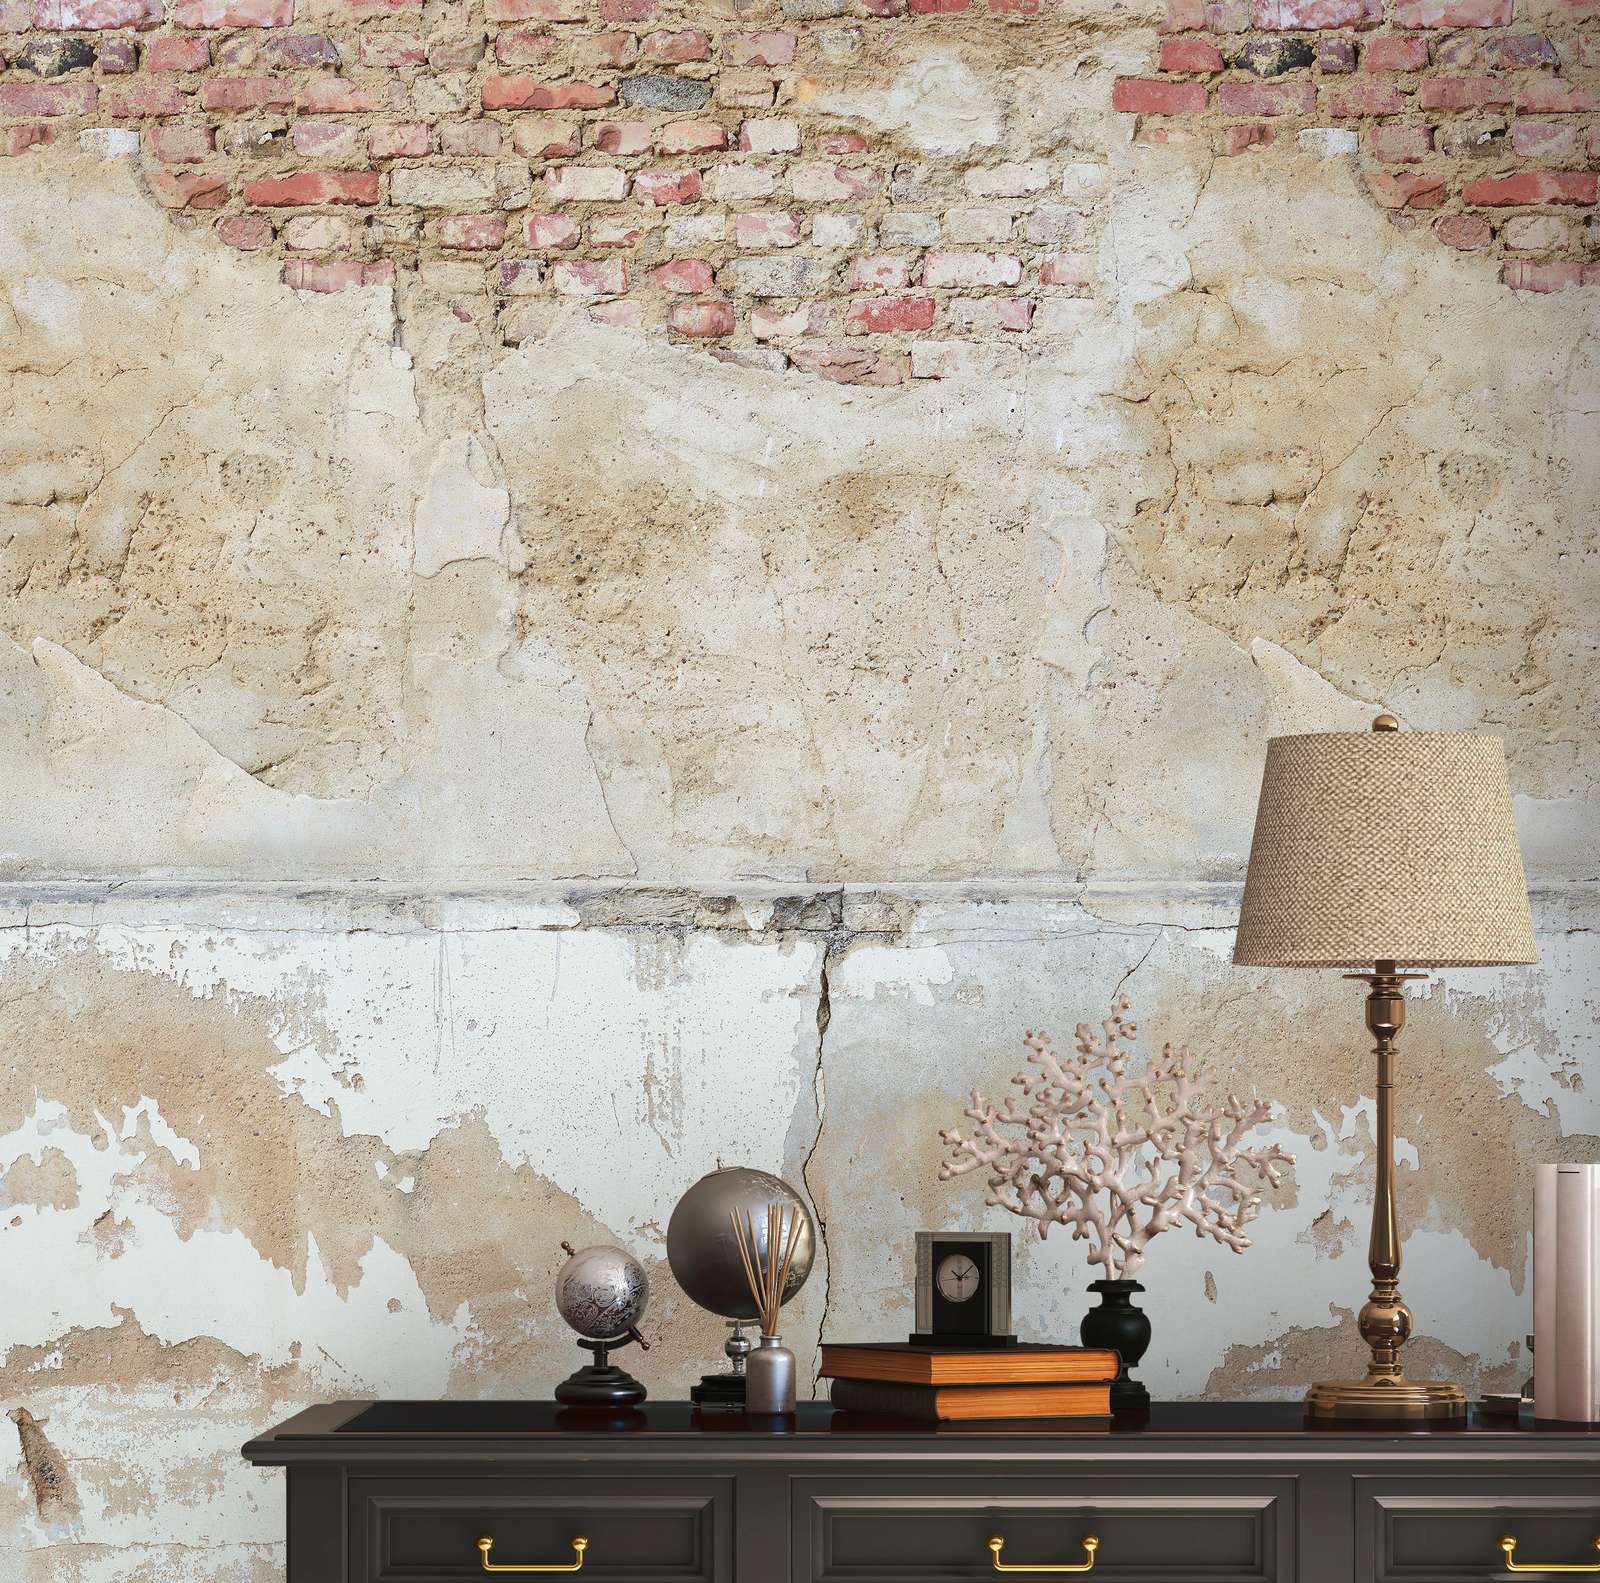             Papier peint mur de pierre aspect béton abstrait - beige, gris, marron
        